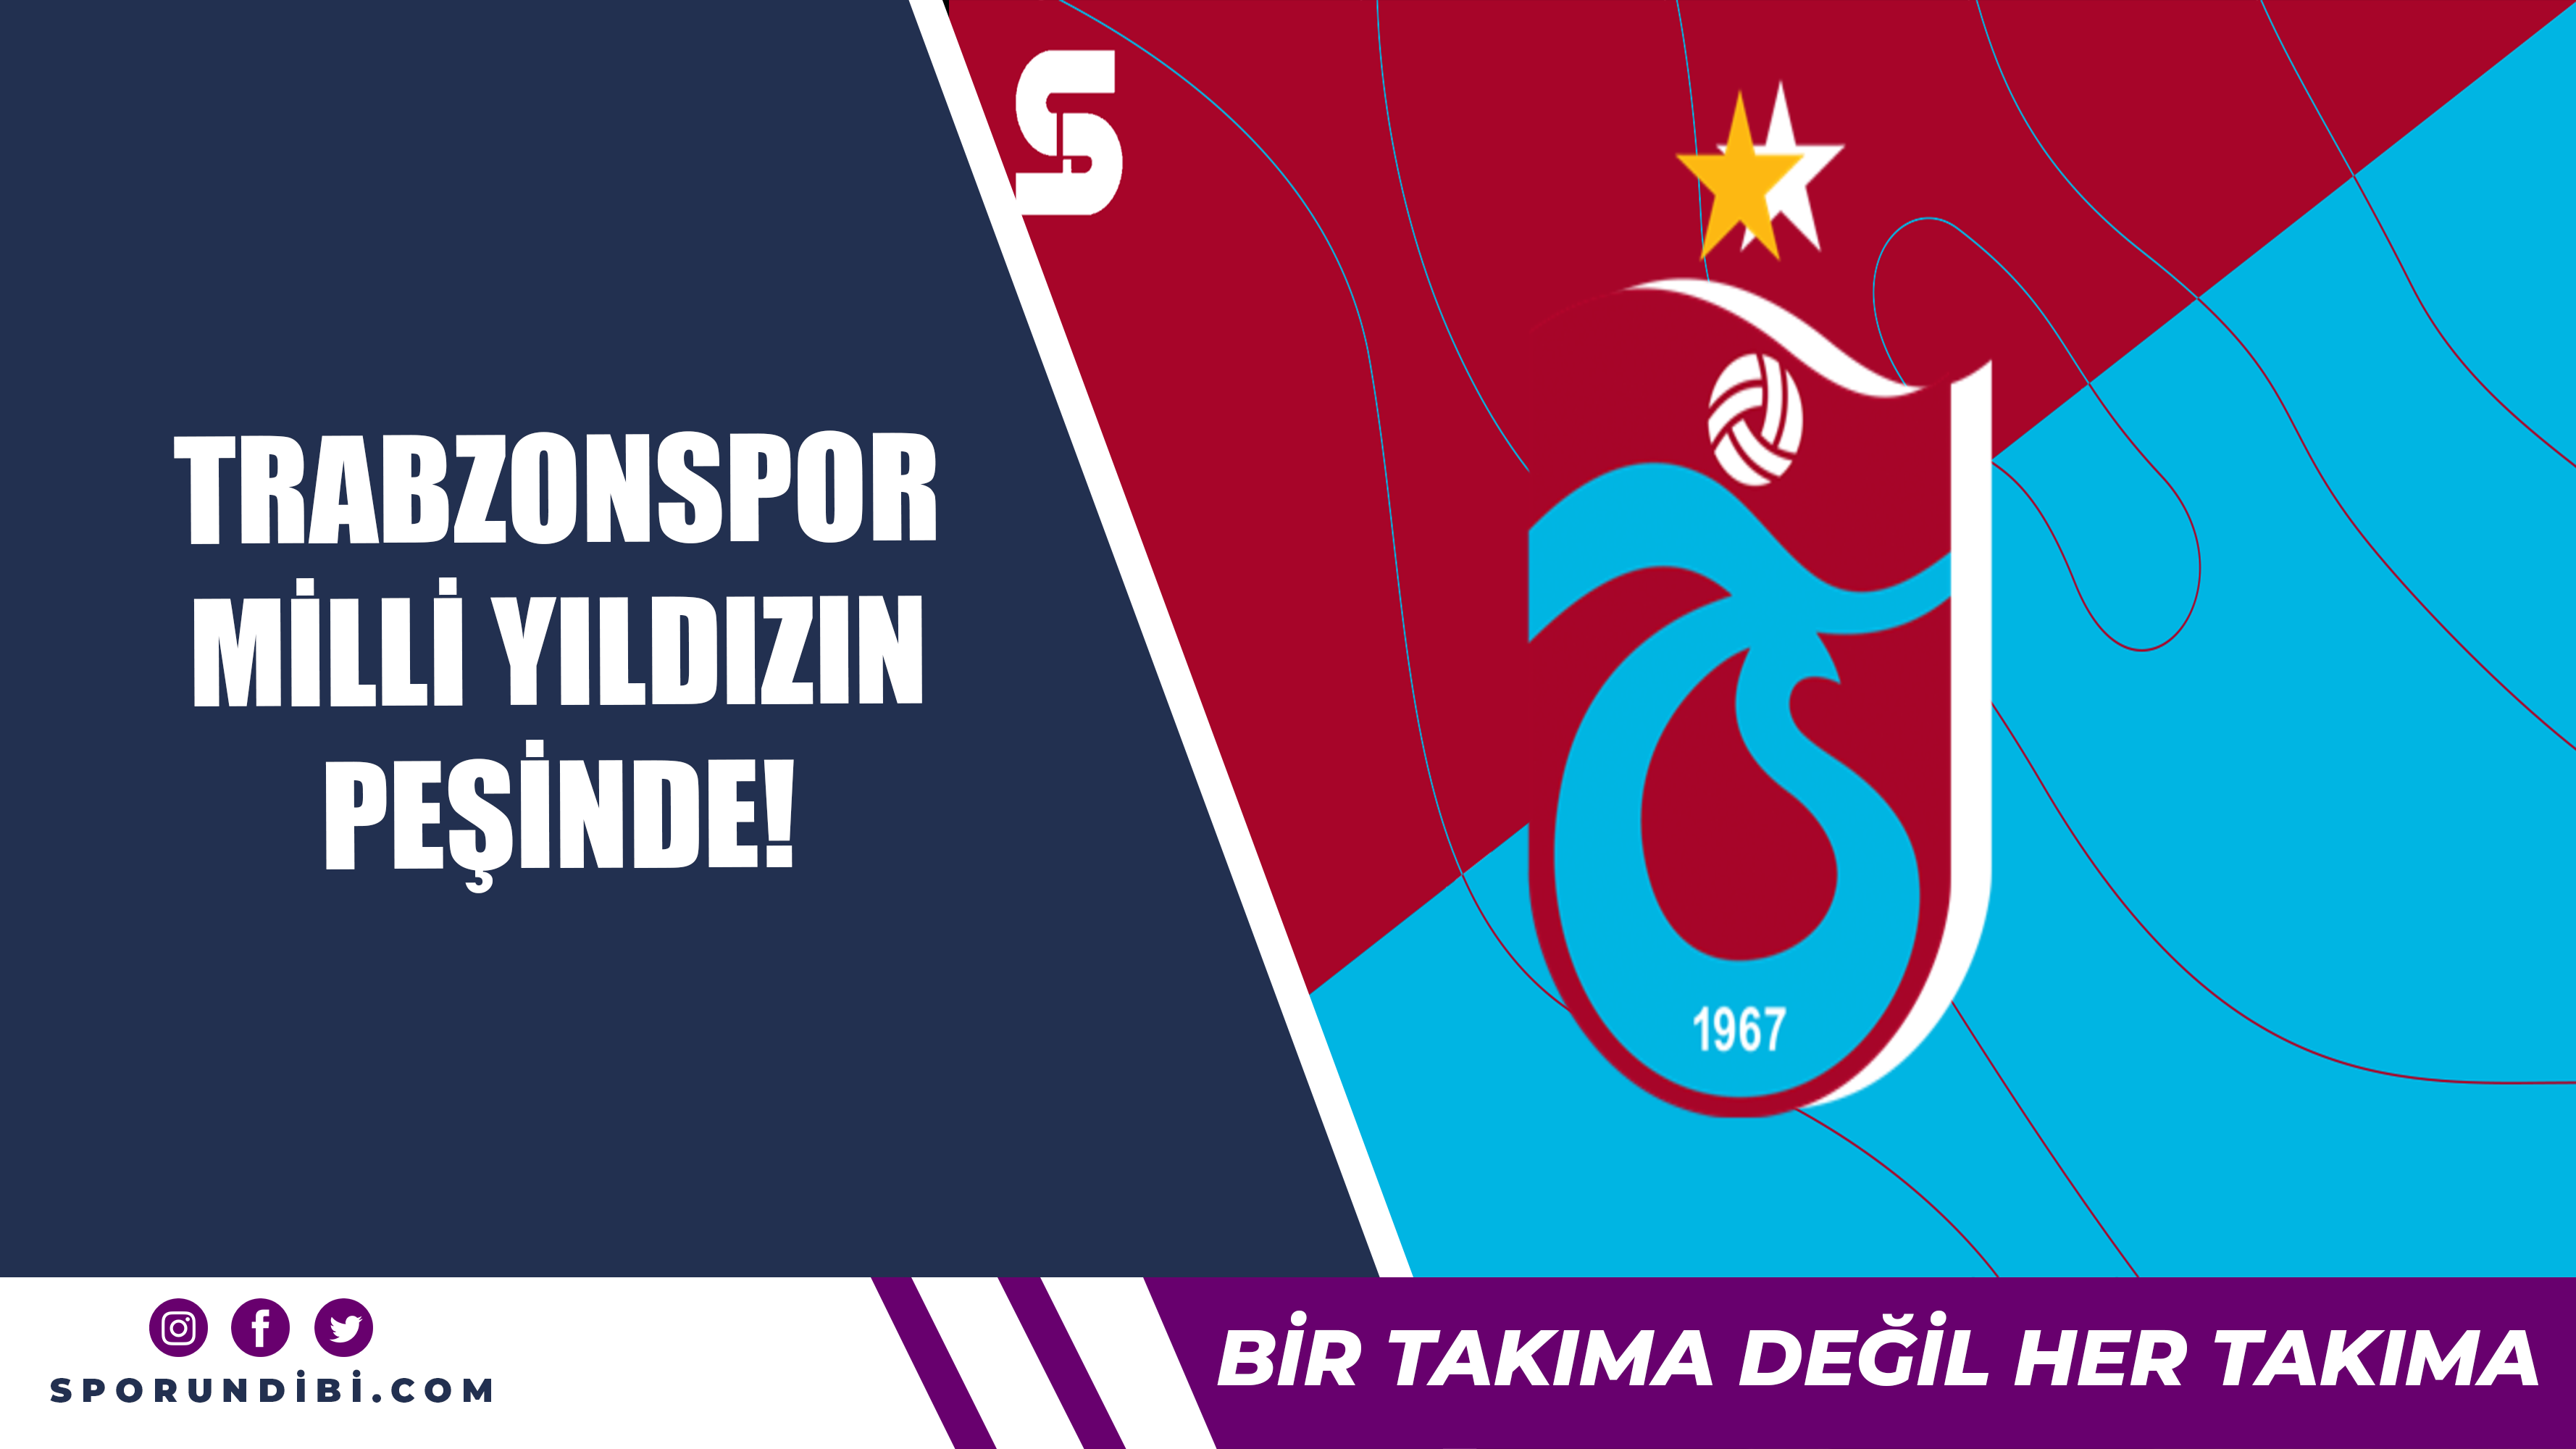 Trabzonspor milli yıldızın peşinde!